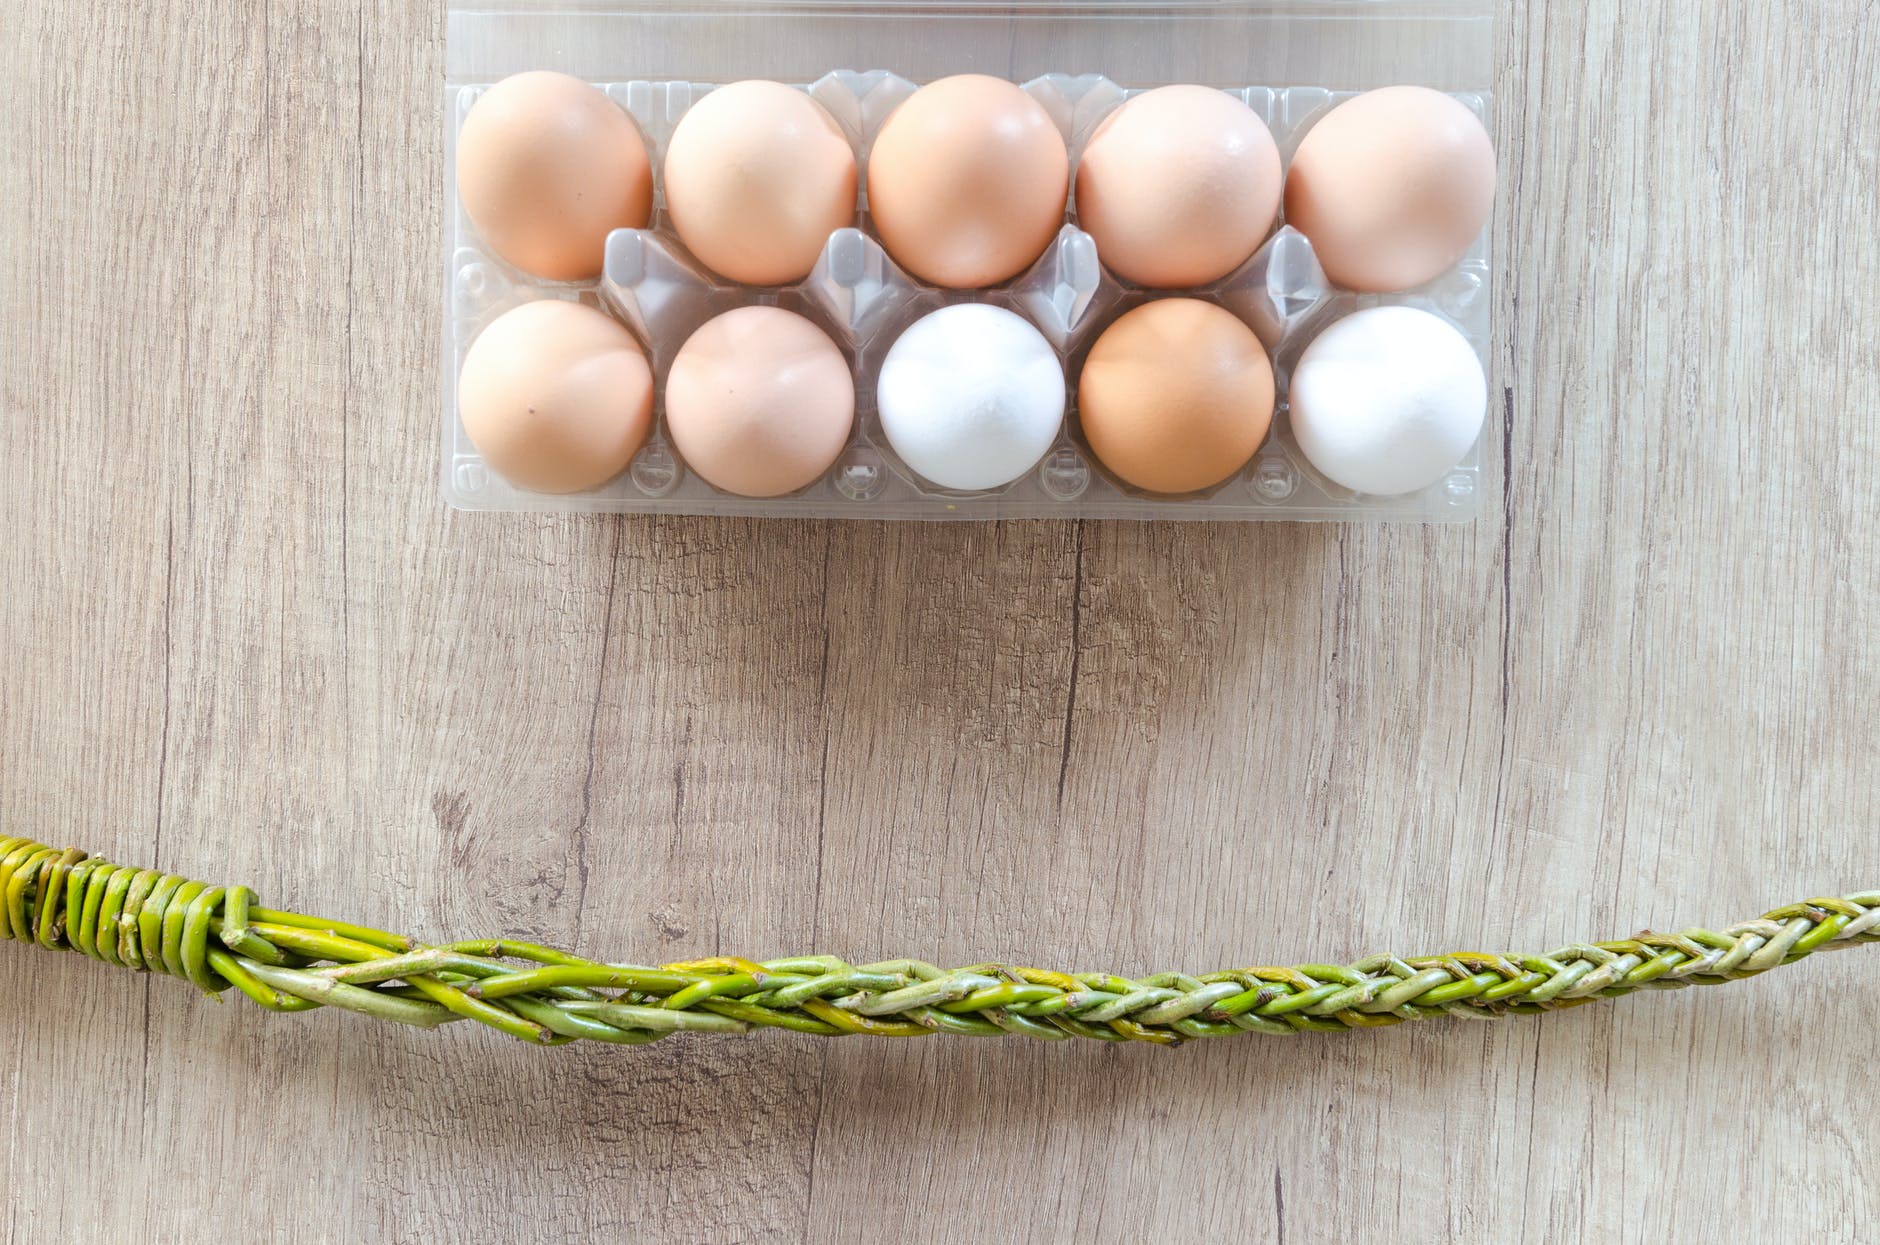 Você sabe guardar e higienizar ovos corretamente? Veja aqui como realizar essas etapas